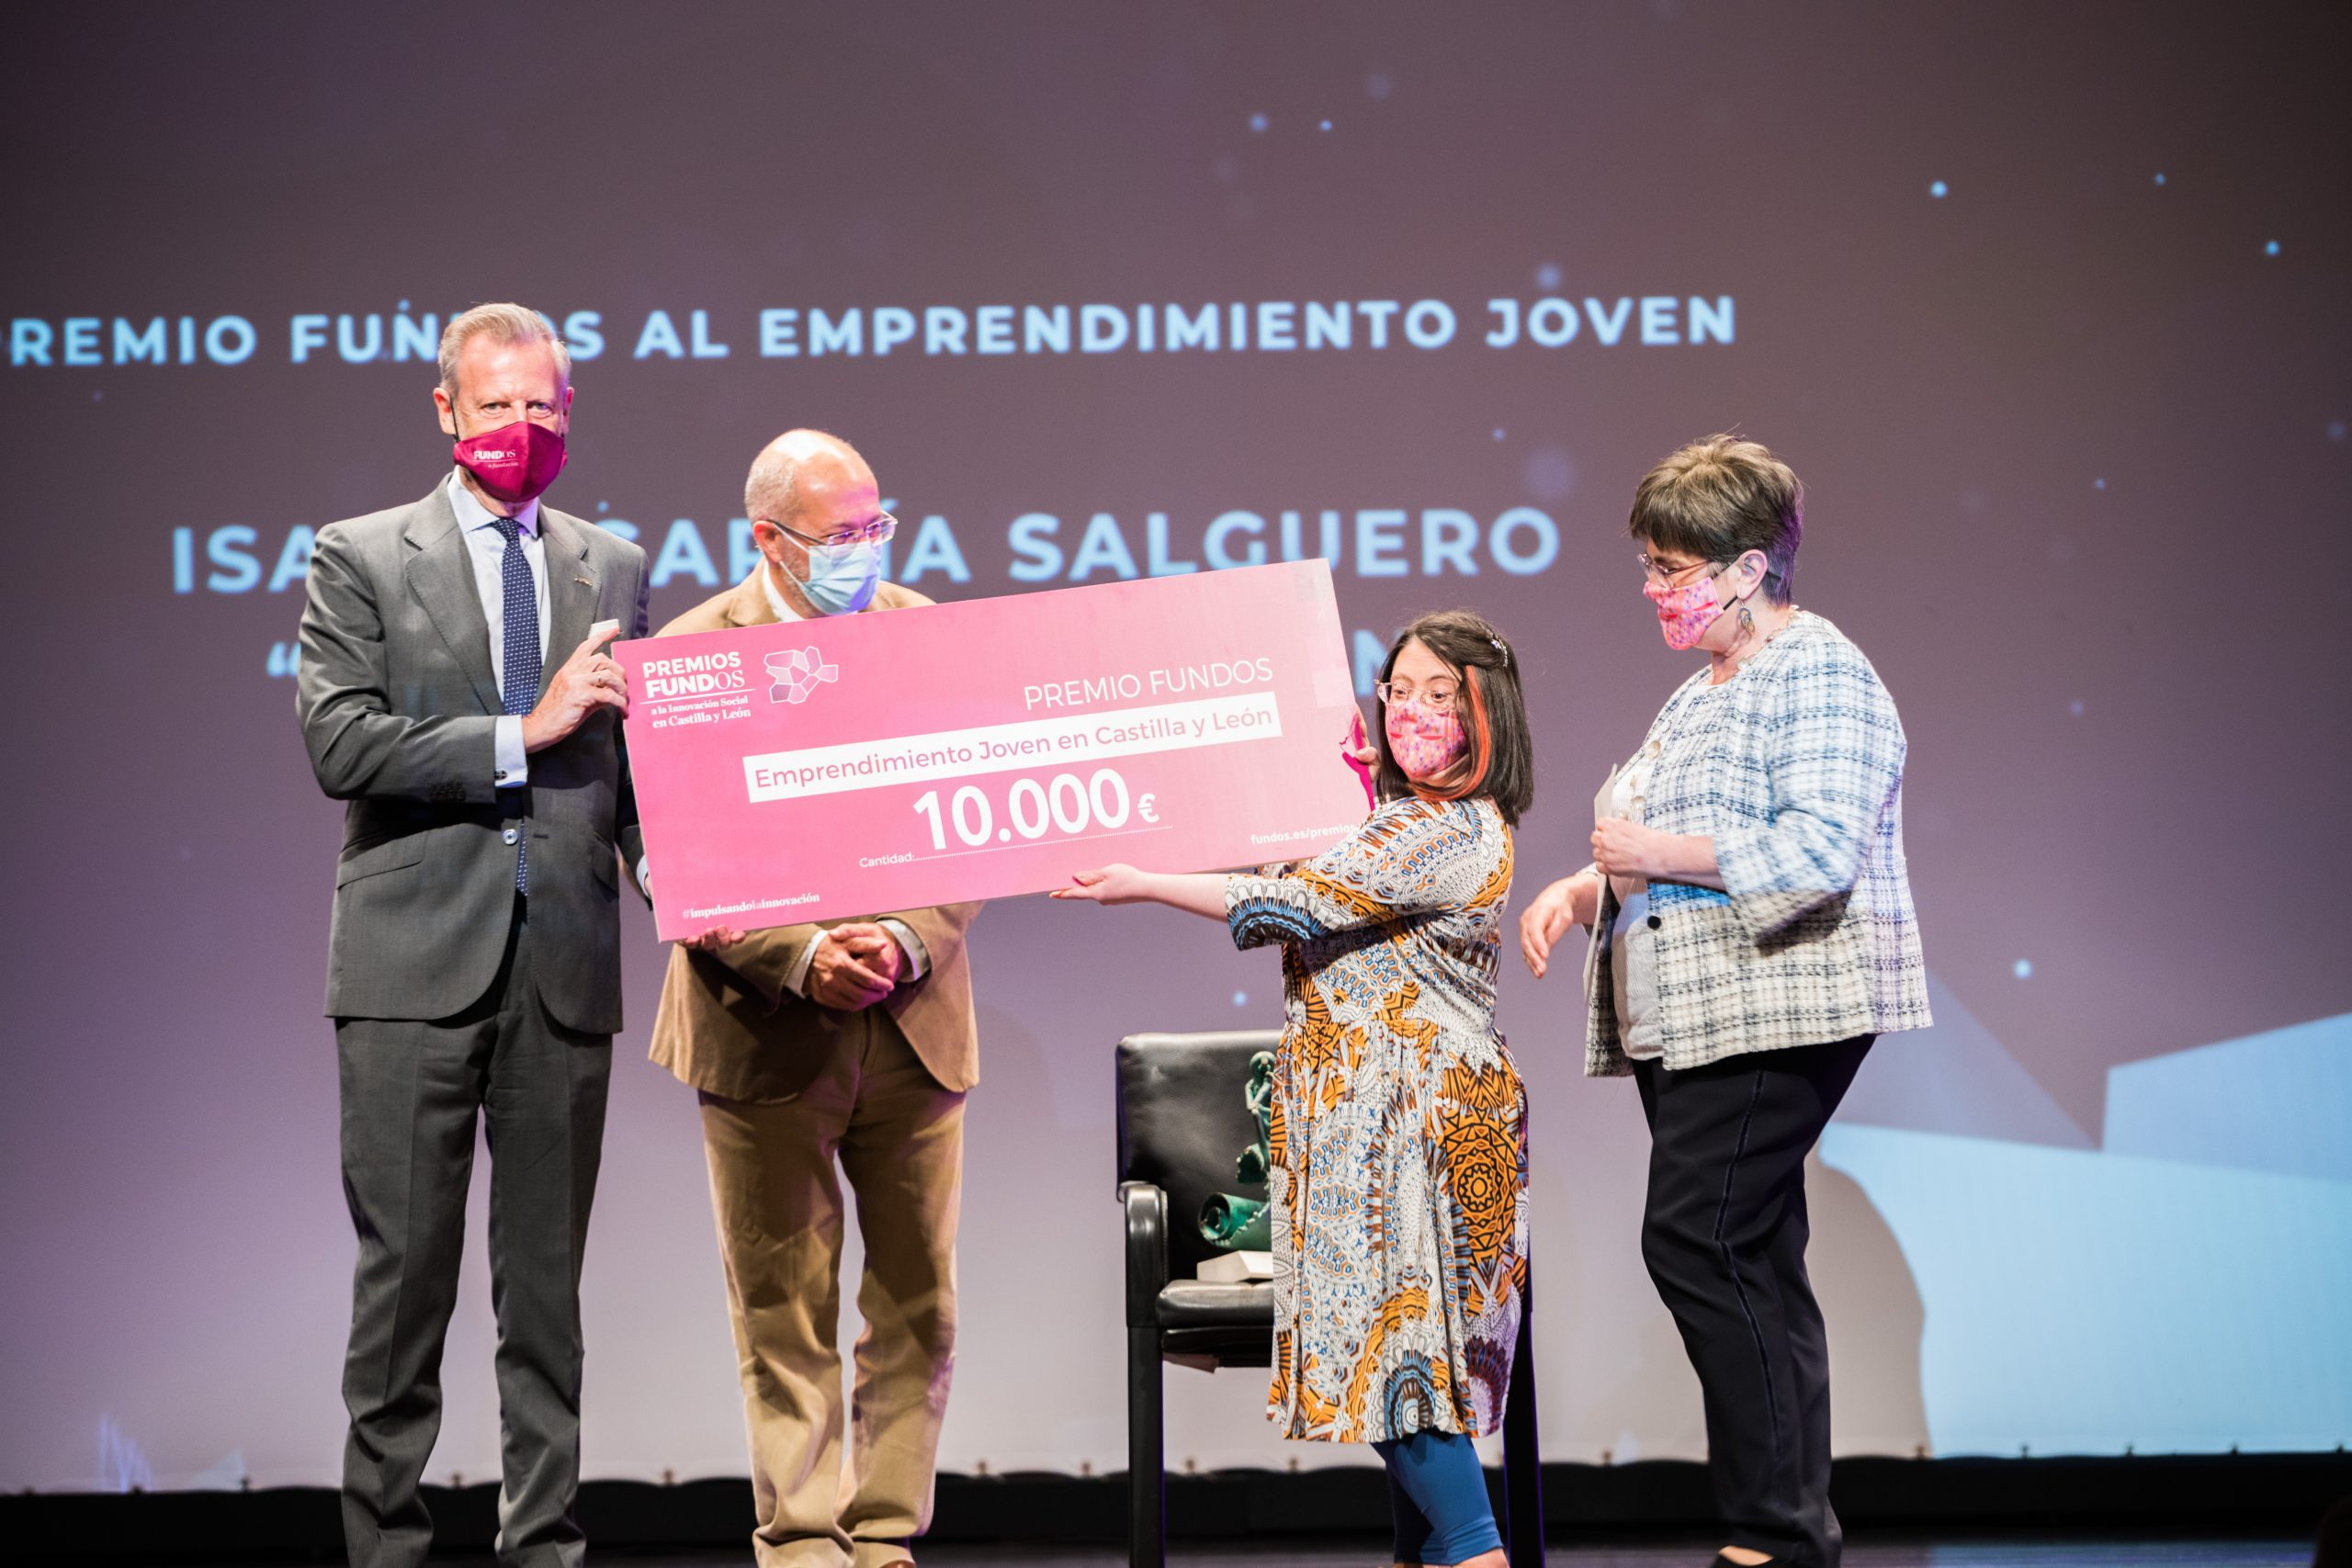 Lady Isabel recoge el Premio Fundos al emprendimiento joven